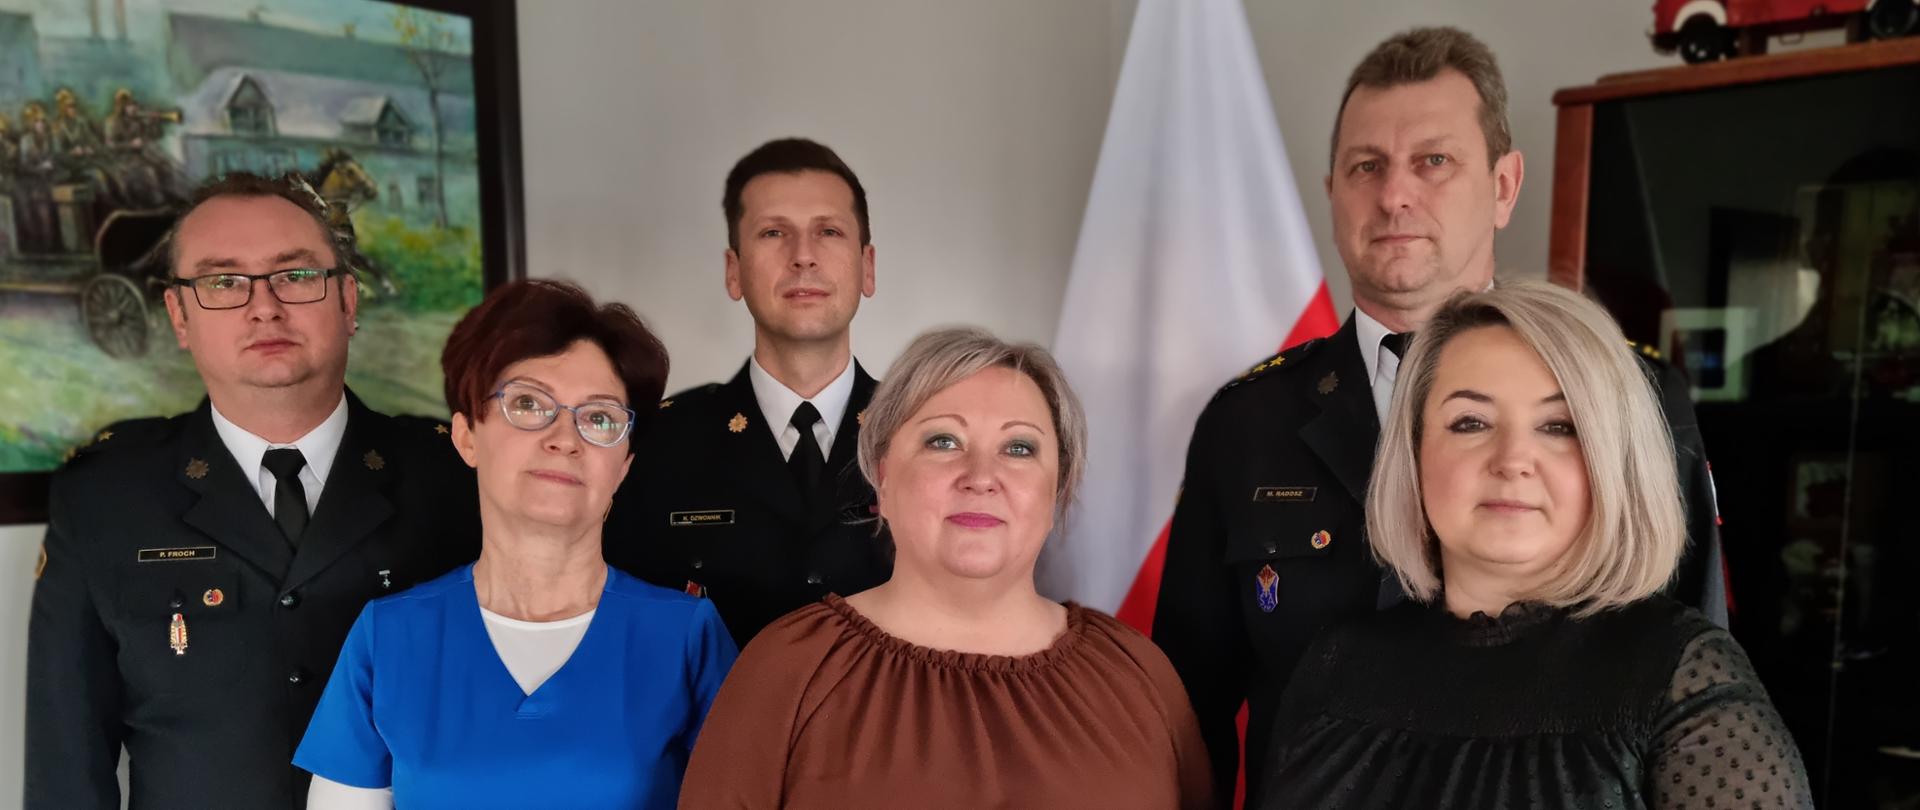 Na zdjęciu Komendant Miejski Państwowej Straży Pożarnej w Częstochowie wraz z zastępcami, przed nimi trzy pracownice otrzymujące gratulacje z okazji dnia korpusu służby cywilnej.